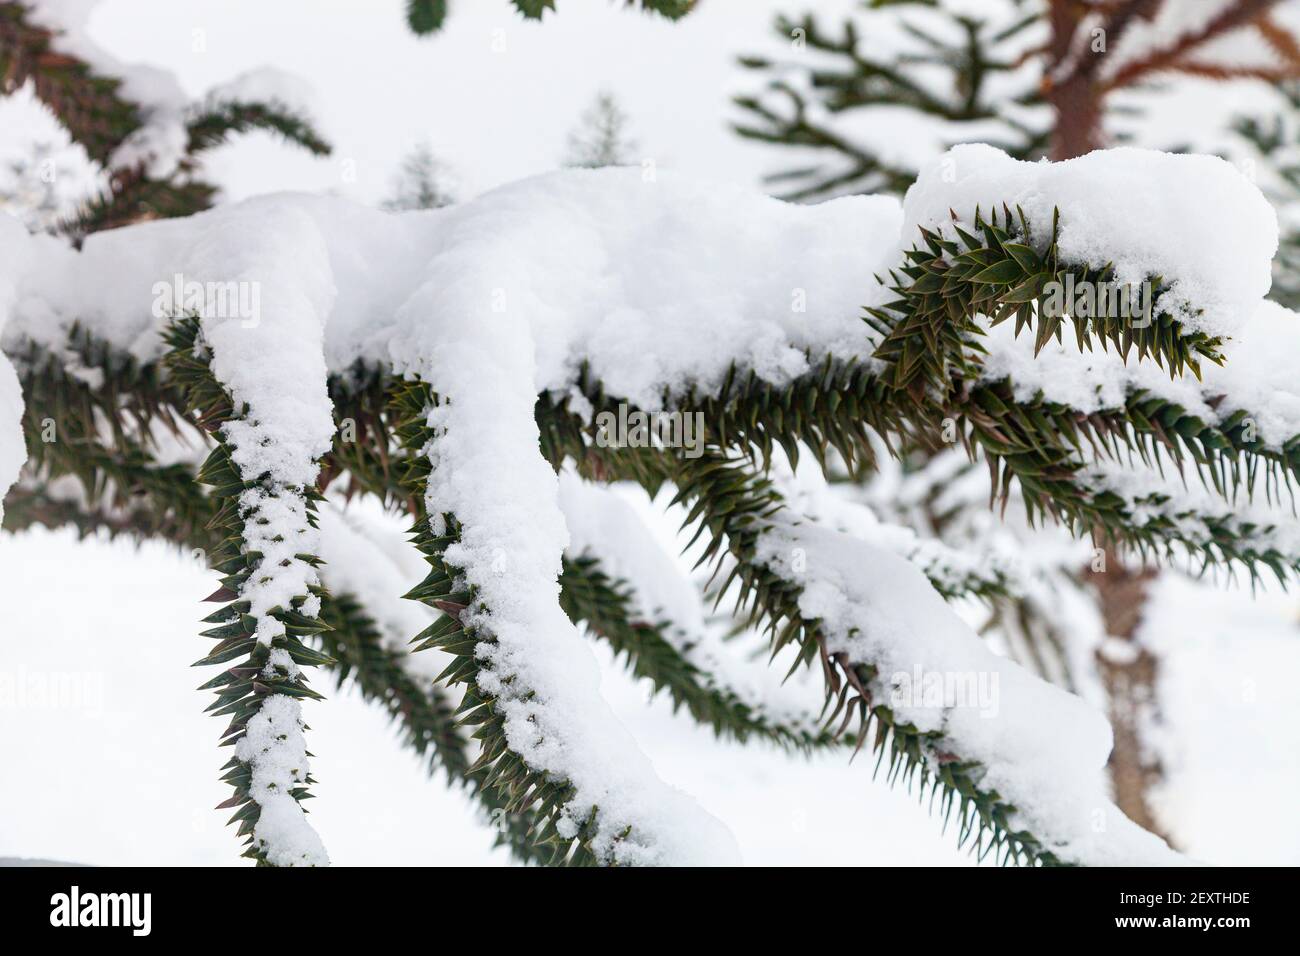 Araucaria dans la neige. Gros plan sur les branches. Araucaria dans le parc en hiver. Banque D'Images